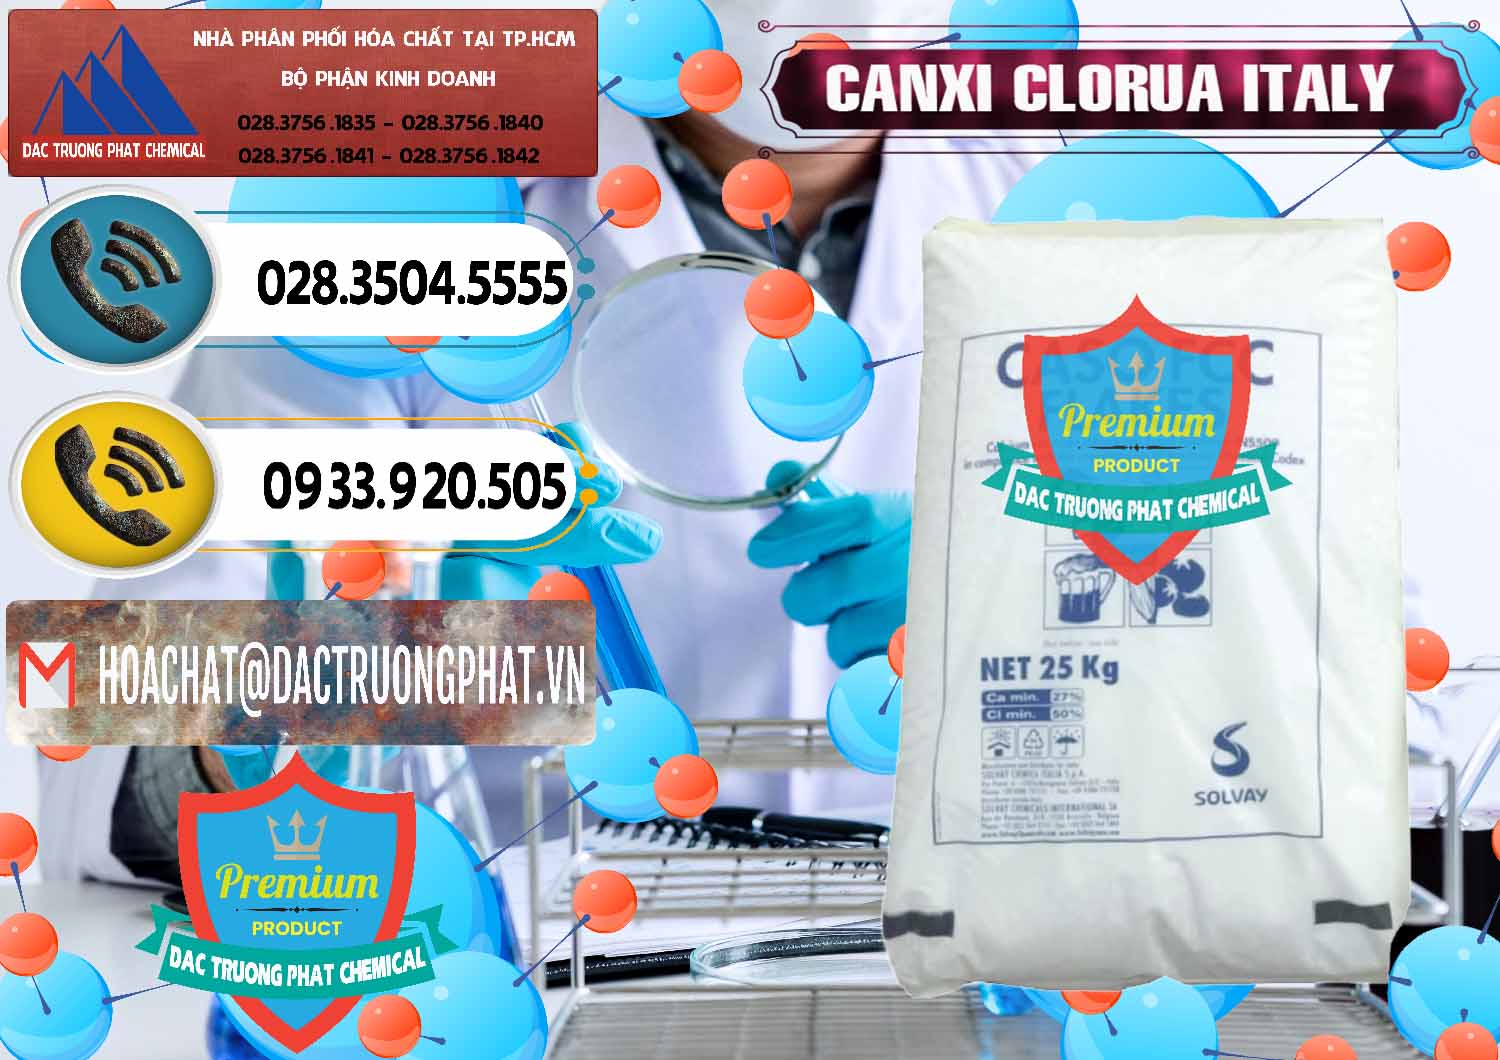 Nơi chuyên phân phối ( bán ) CaCl2 – Canxi Clorua Food Grade Ý Italy - 0435 - Nhà cung cấp _ phân phối hóa chất tại TP.HCM - hoachatdetnhuom.vn